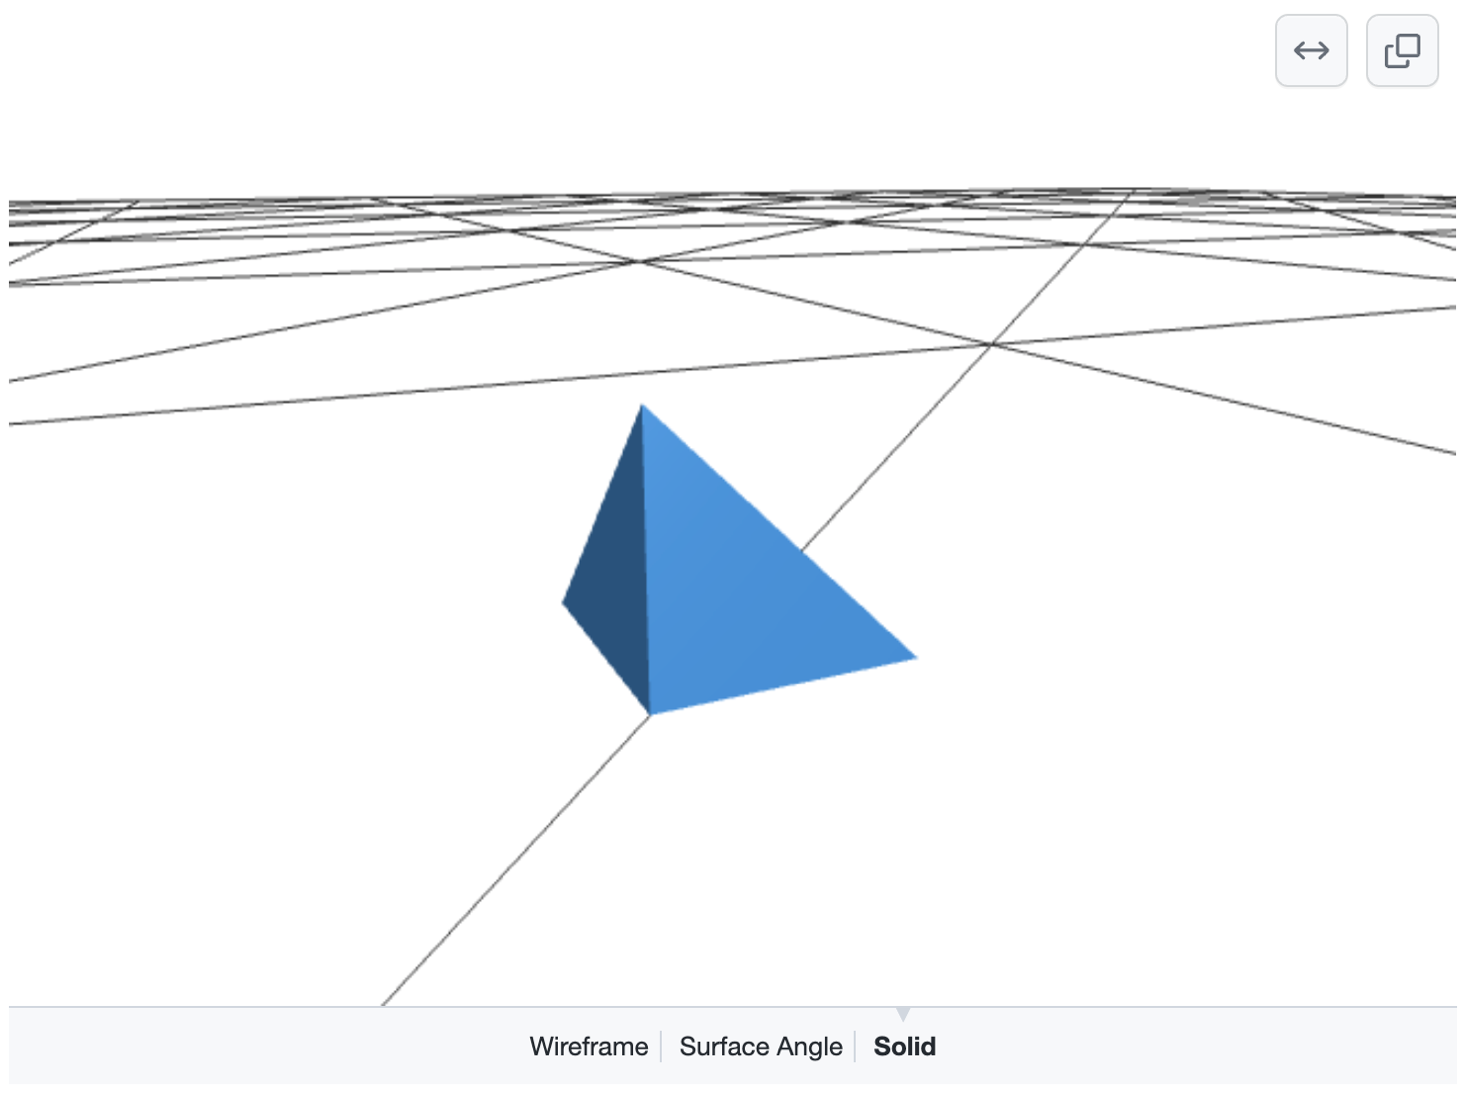 Captura de tela de um modelo 3D renderizado e manipulável mostrando uma pirâmide azul no topo de uma grade de linhas pretas em um chão branco. As opções para selecionar "Wireframe", "Surface Angle" ou "Solid" aparecem na parte inferior.